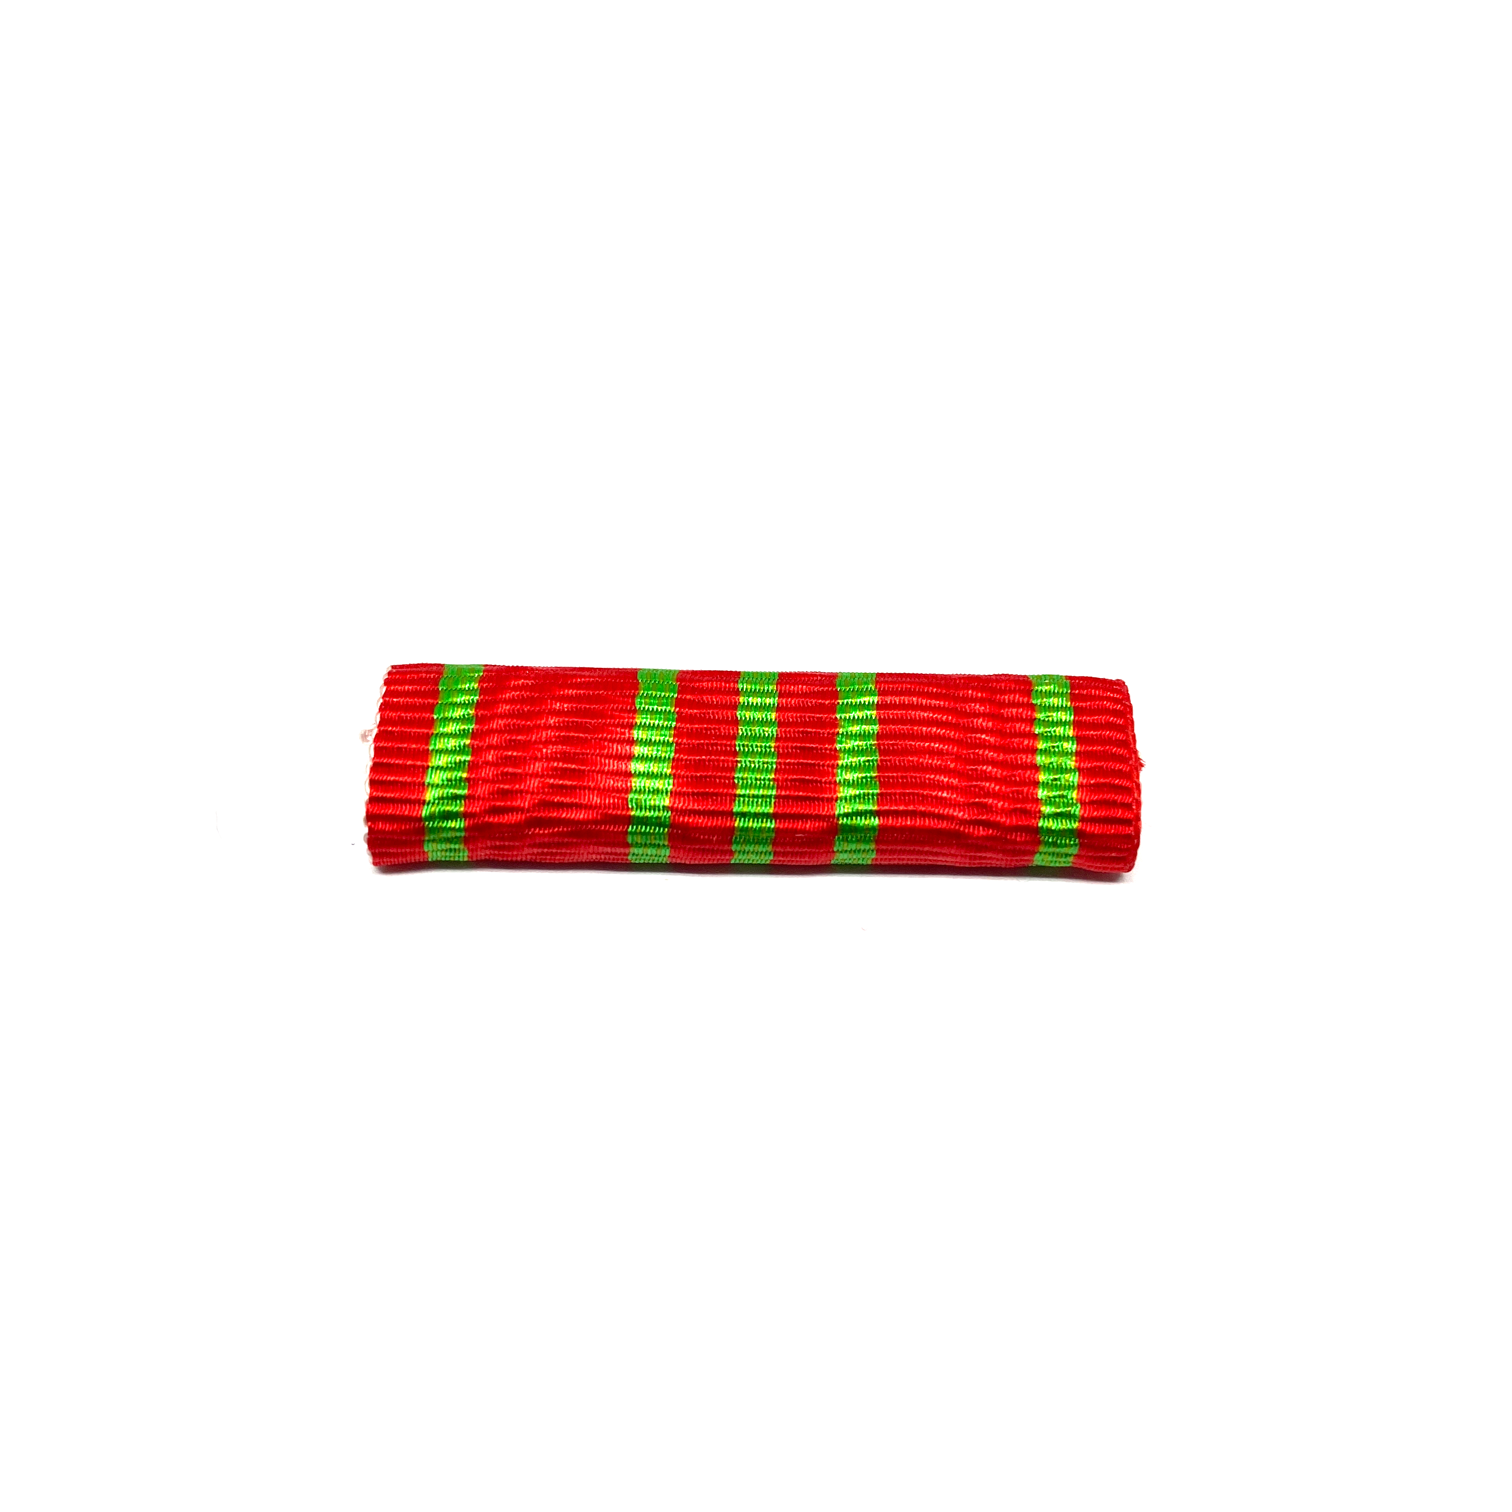 Médaille Croix de Guerre 1914-1918